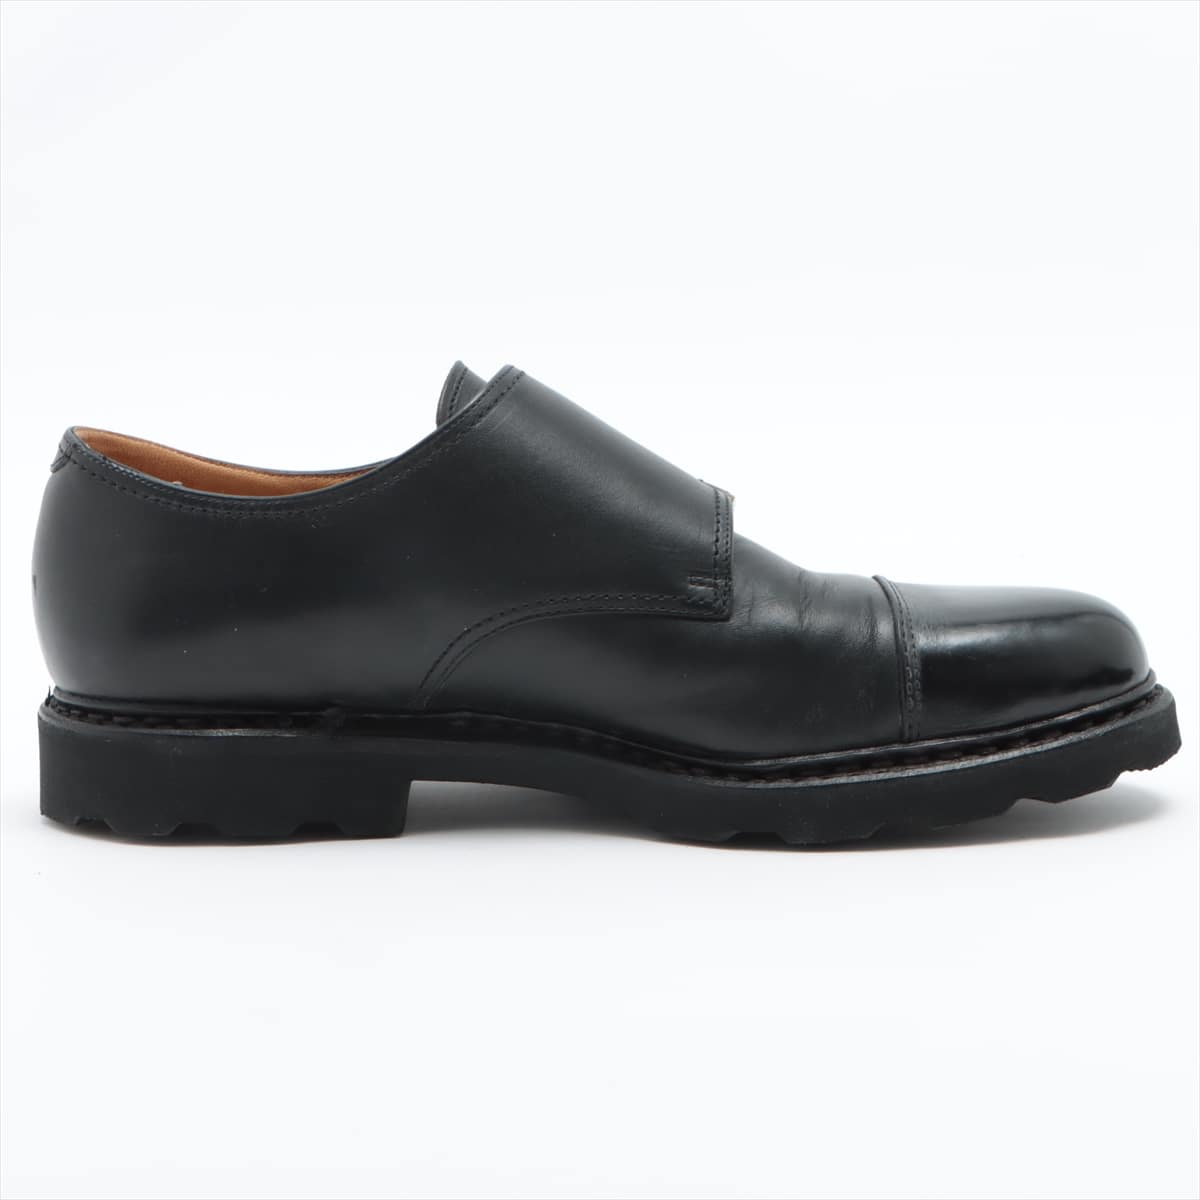 Paraboot William Leather Shoes 7 1/2 Men's Black Double monk